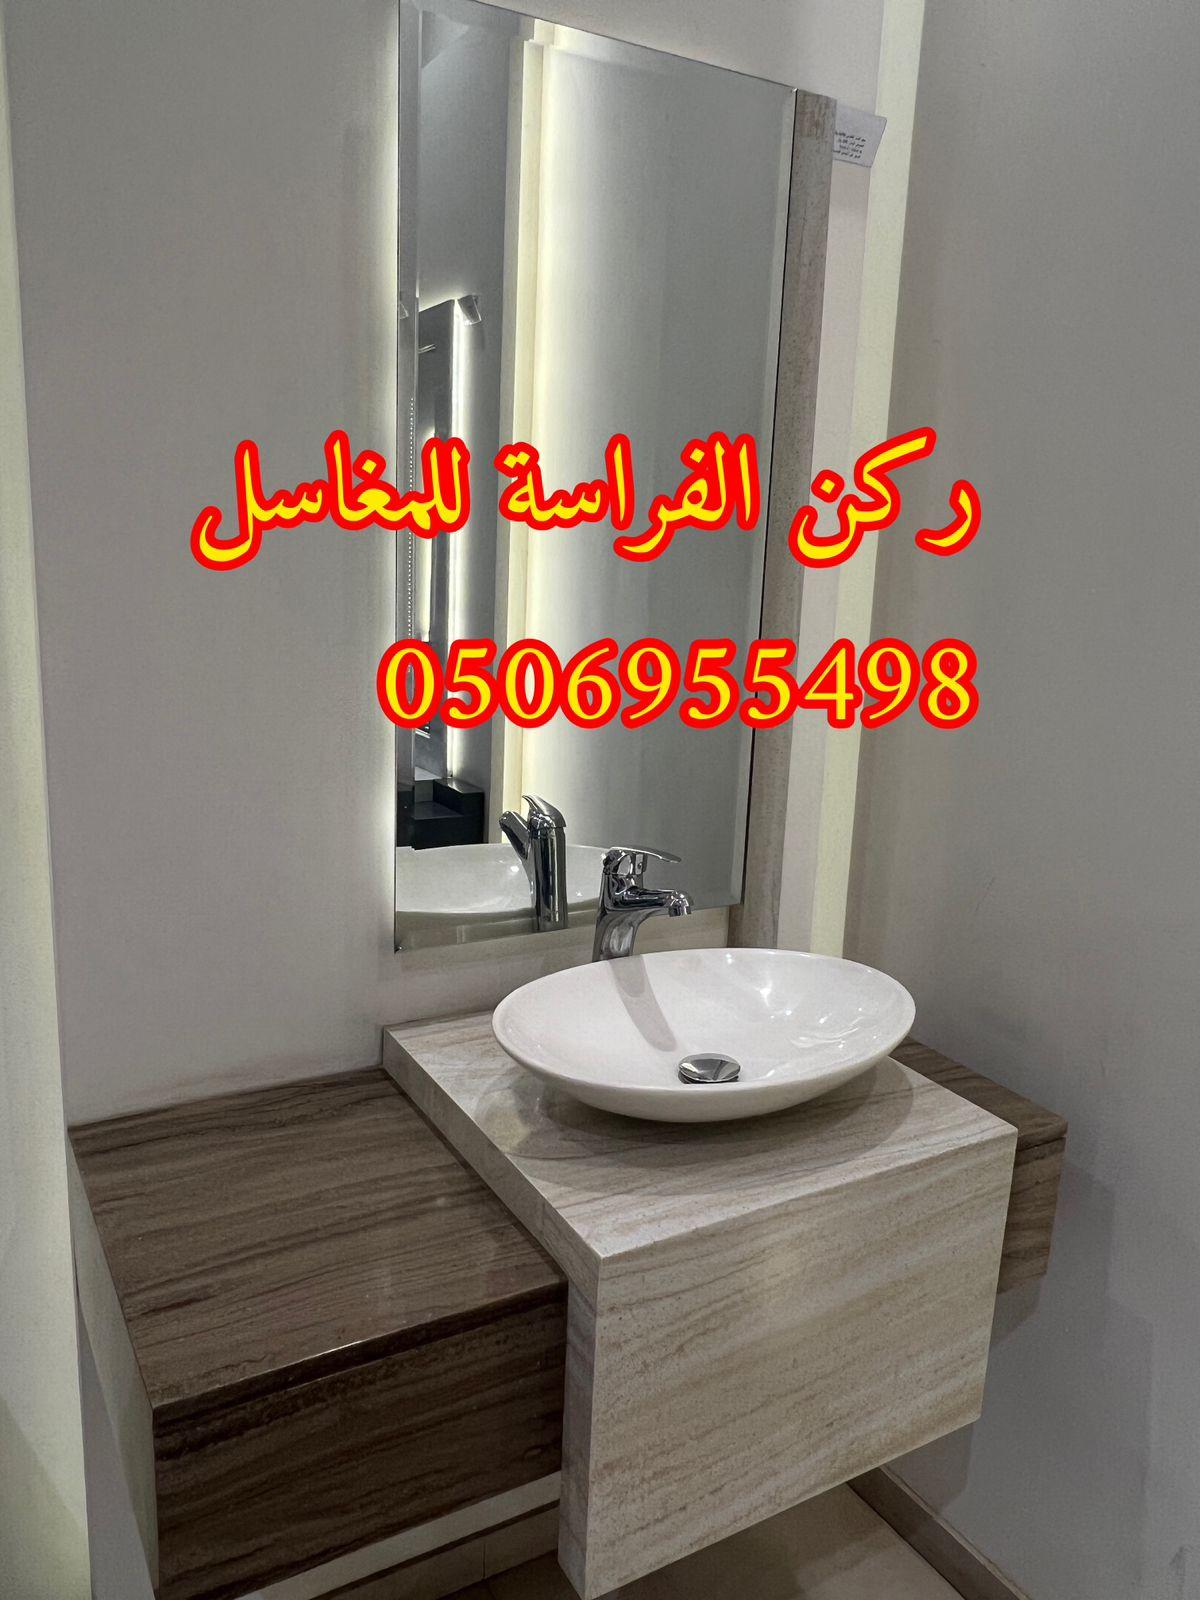 مغاسل حمامات رخام مودرن فخمة في الرياض,0506955498 289089458